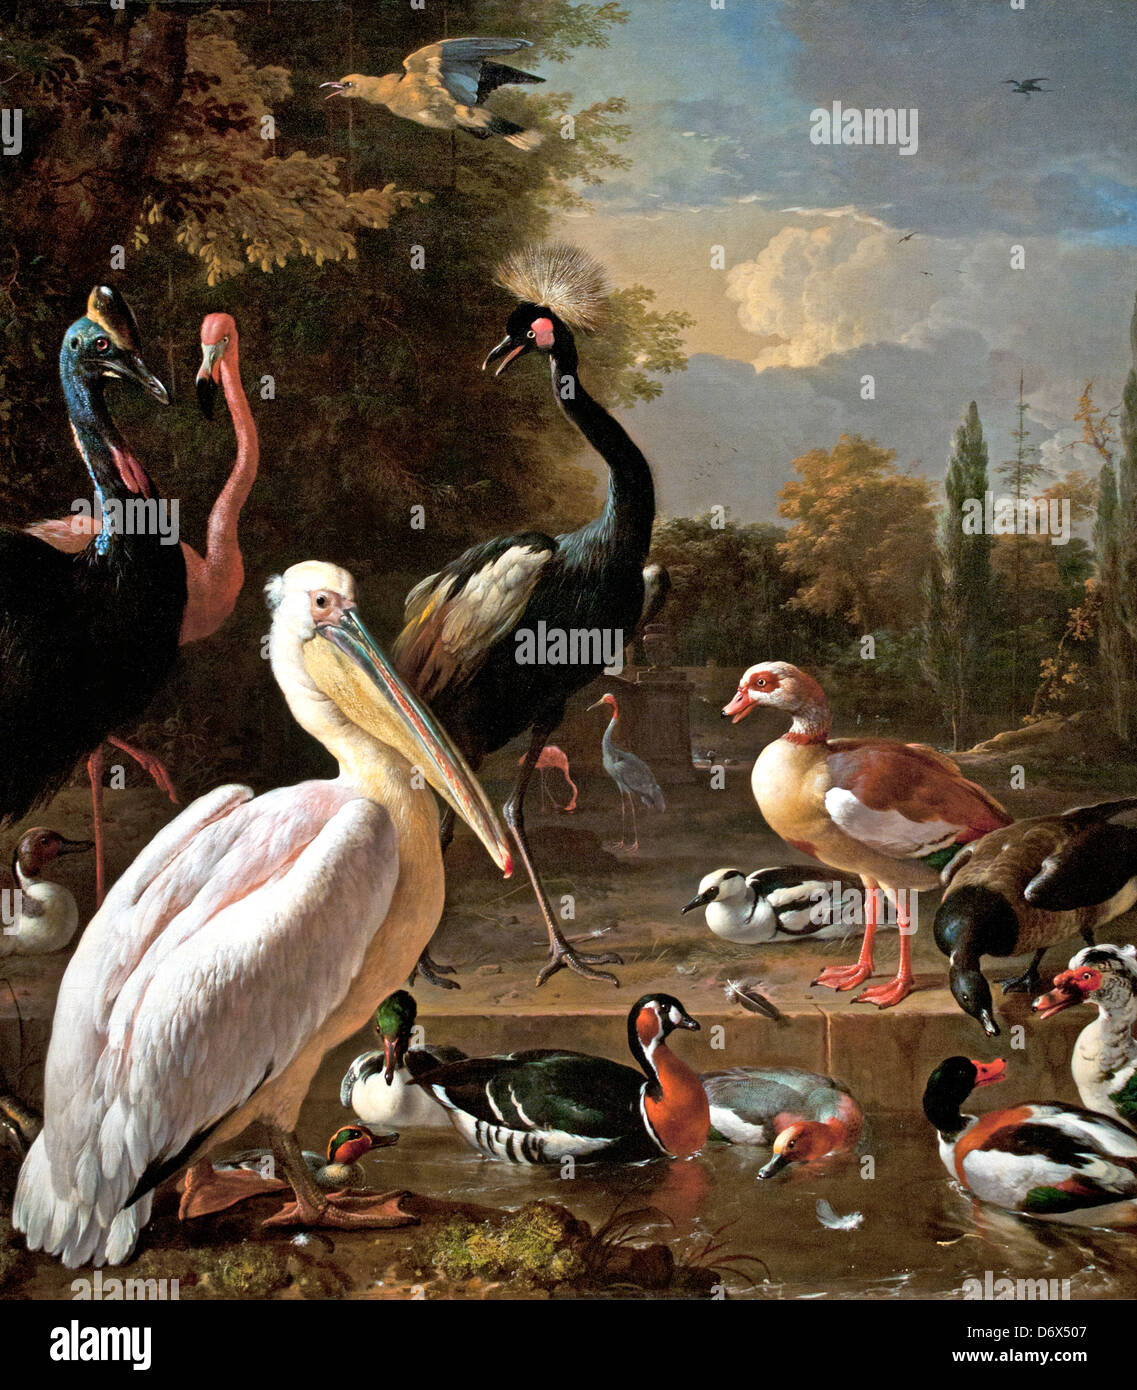 Un pélican et d'autres oiseaux connus d'un bassin d'eau Comme la plume flottante 1680 Melchior d'Hondecoeter 1636 - 1695 pays-Bas Néerlandais Banque D'Images